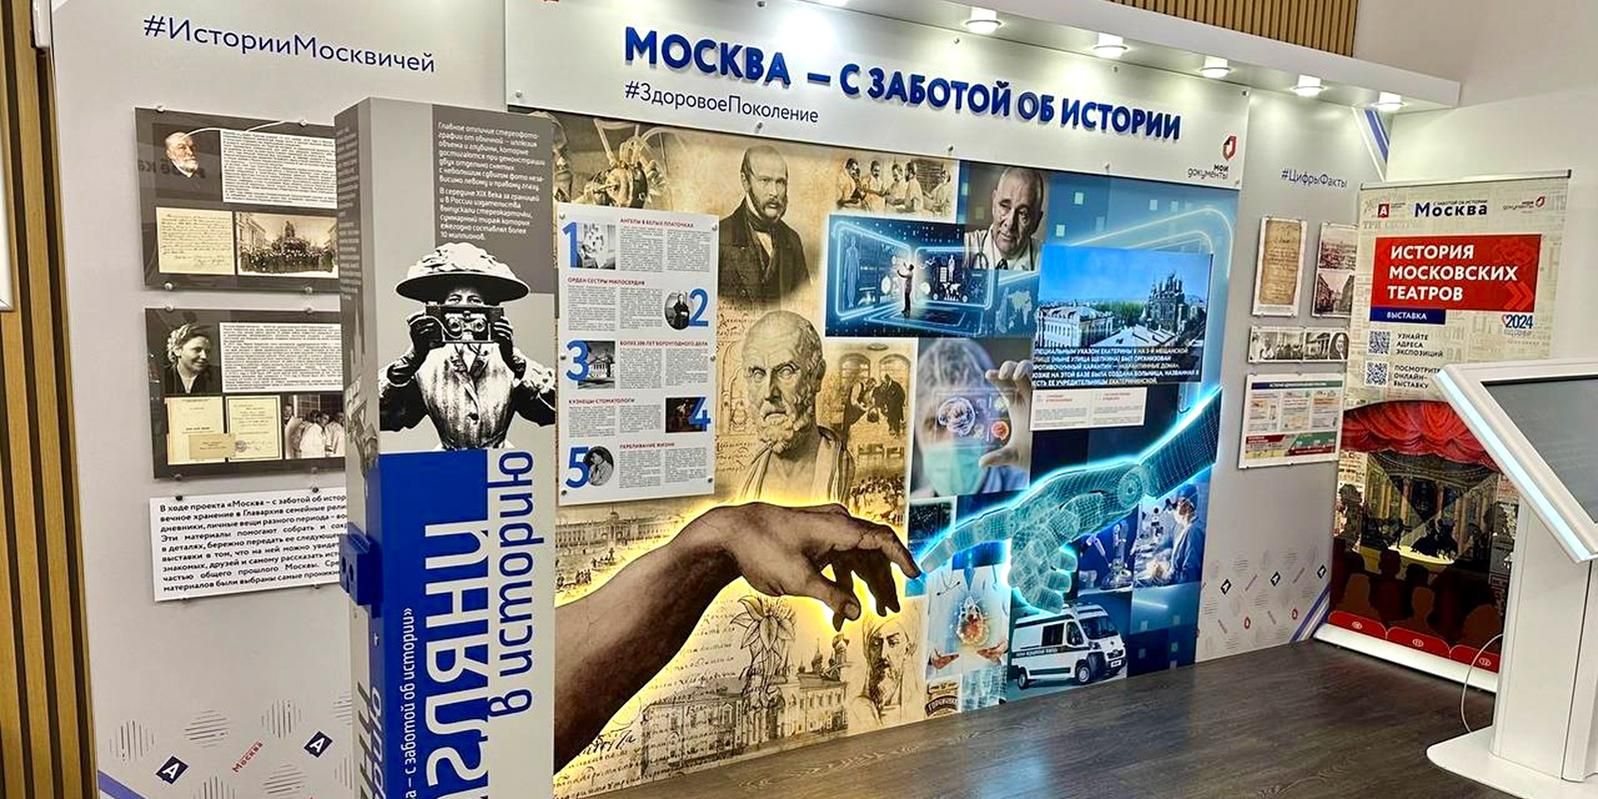 Выставку подготовили в рамках проекта «Москва — с заботой об истории». Фото: сайт мэра Москвы